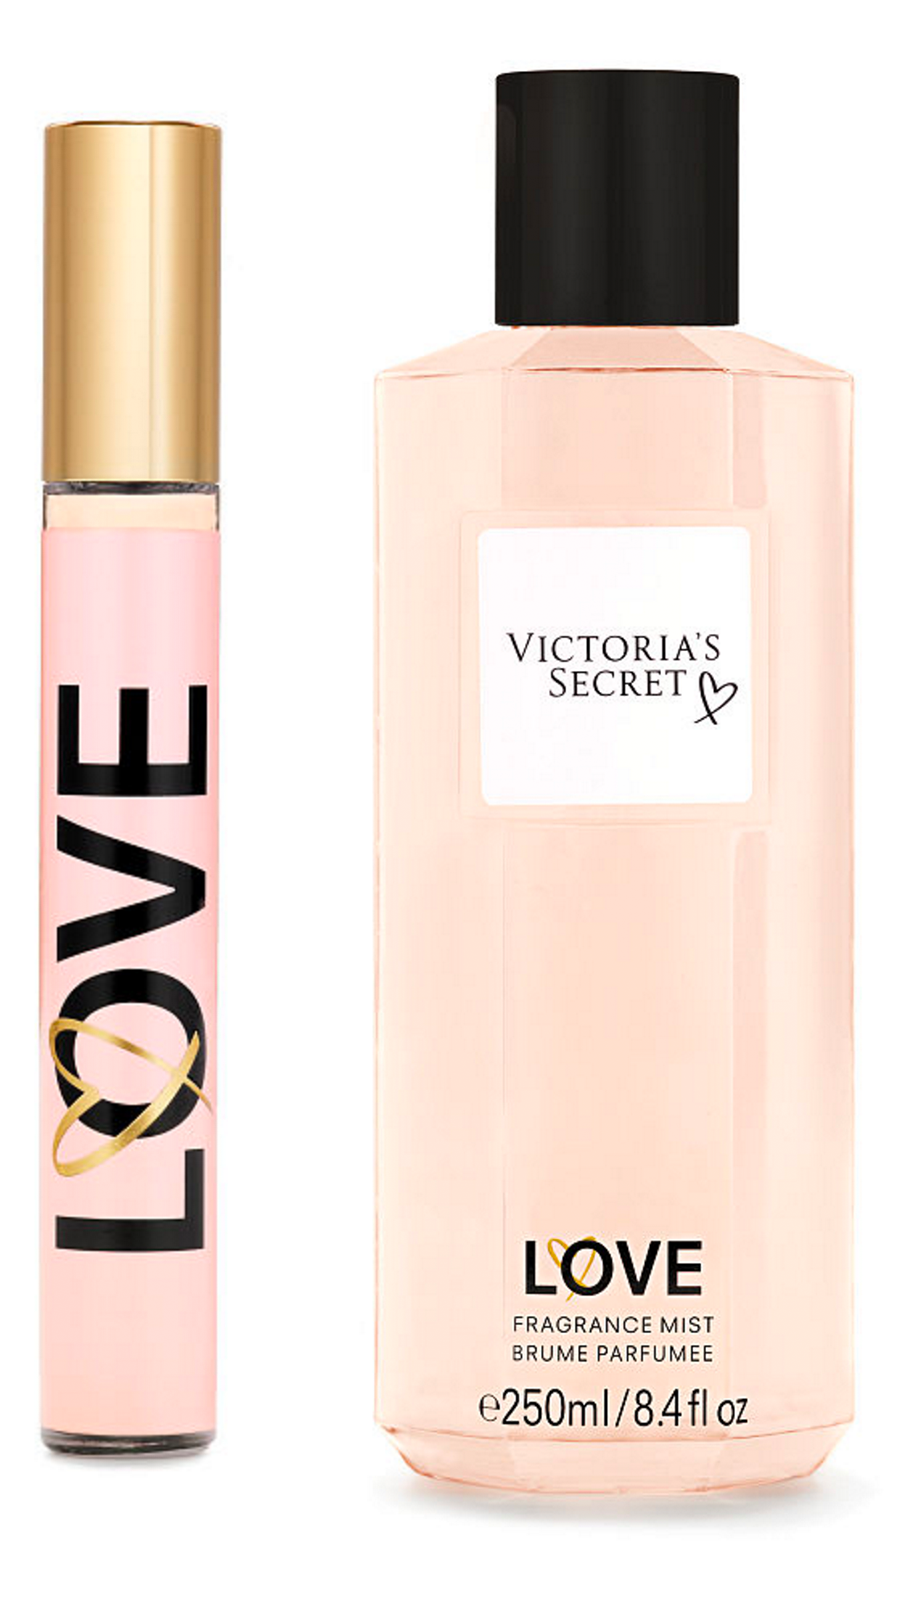 Victoria's Secret - Love Eau de Parfum | Reviews and Rating